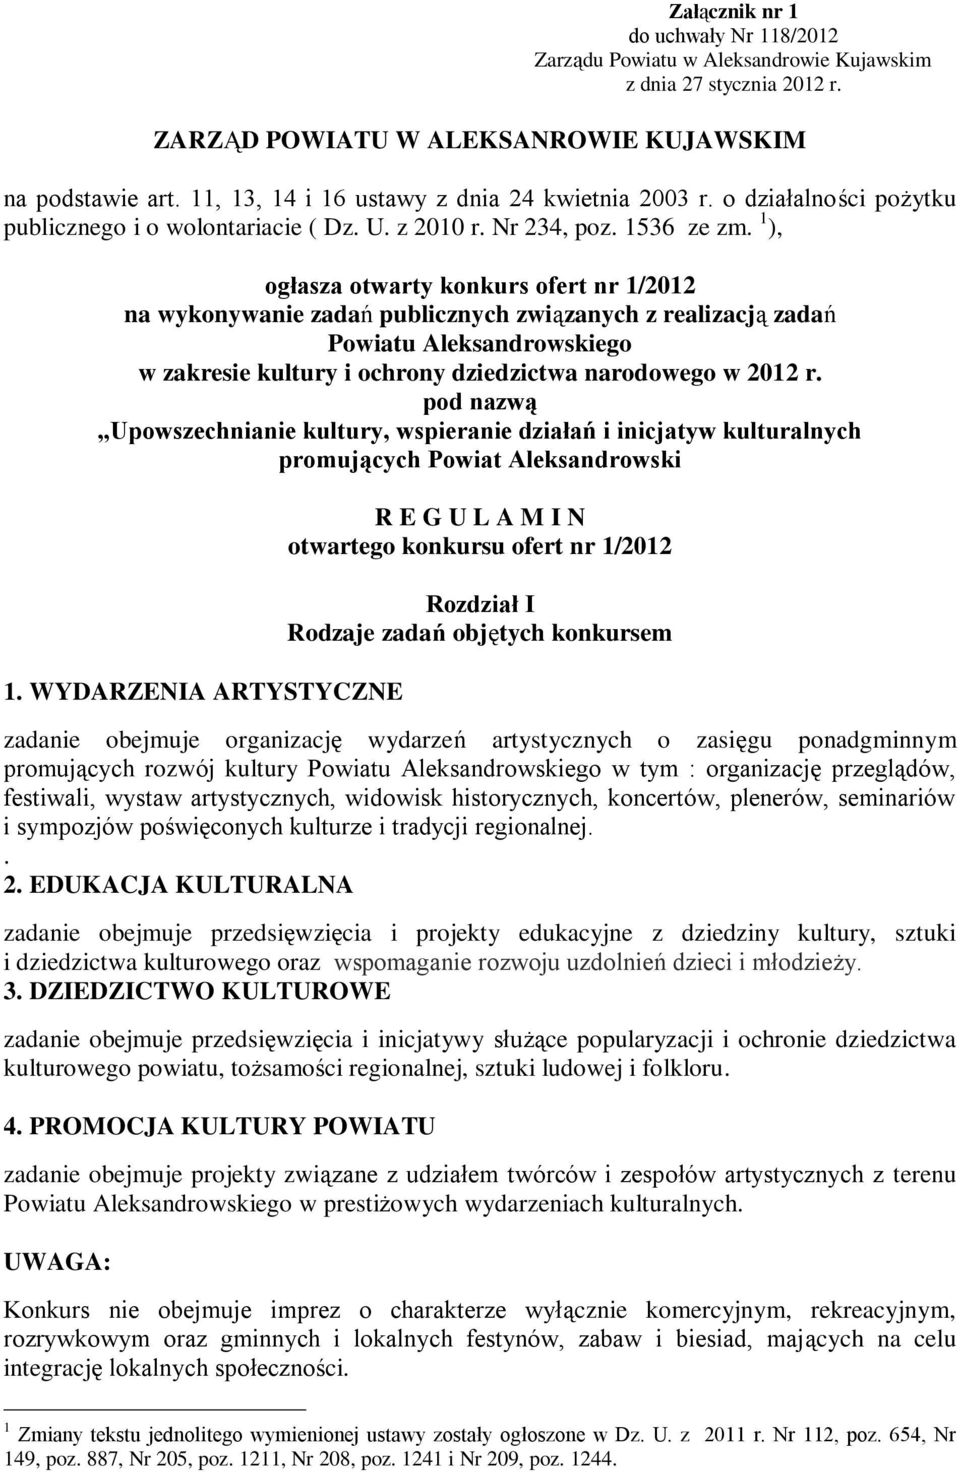 1 ), ogłasza otwarty konkurs ofert nr 1/2012 na wykonywanie zadań publicznych związanych z realizacją zadań Powiatu Aleksandrowskiego w zakresie kultury i ochrony dziedzictwa narodowego w 2012 r.